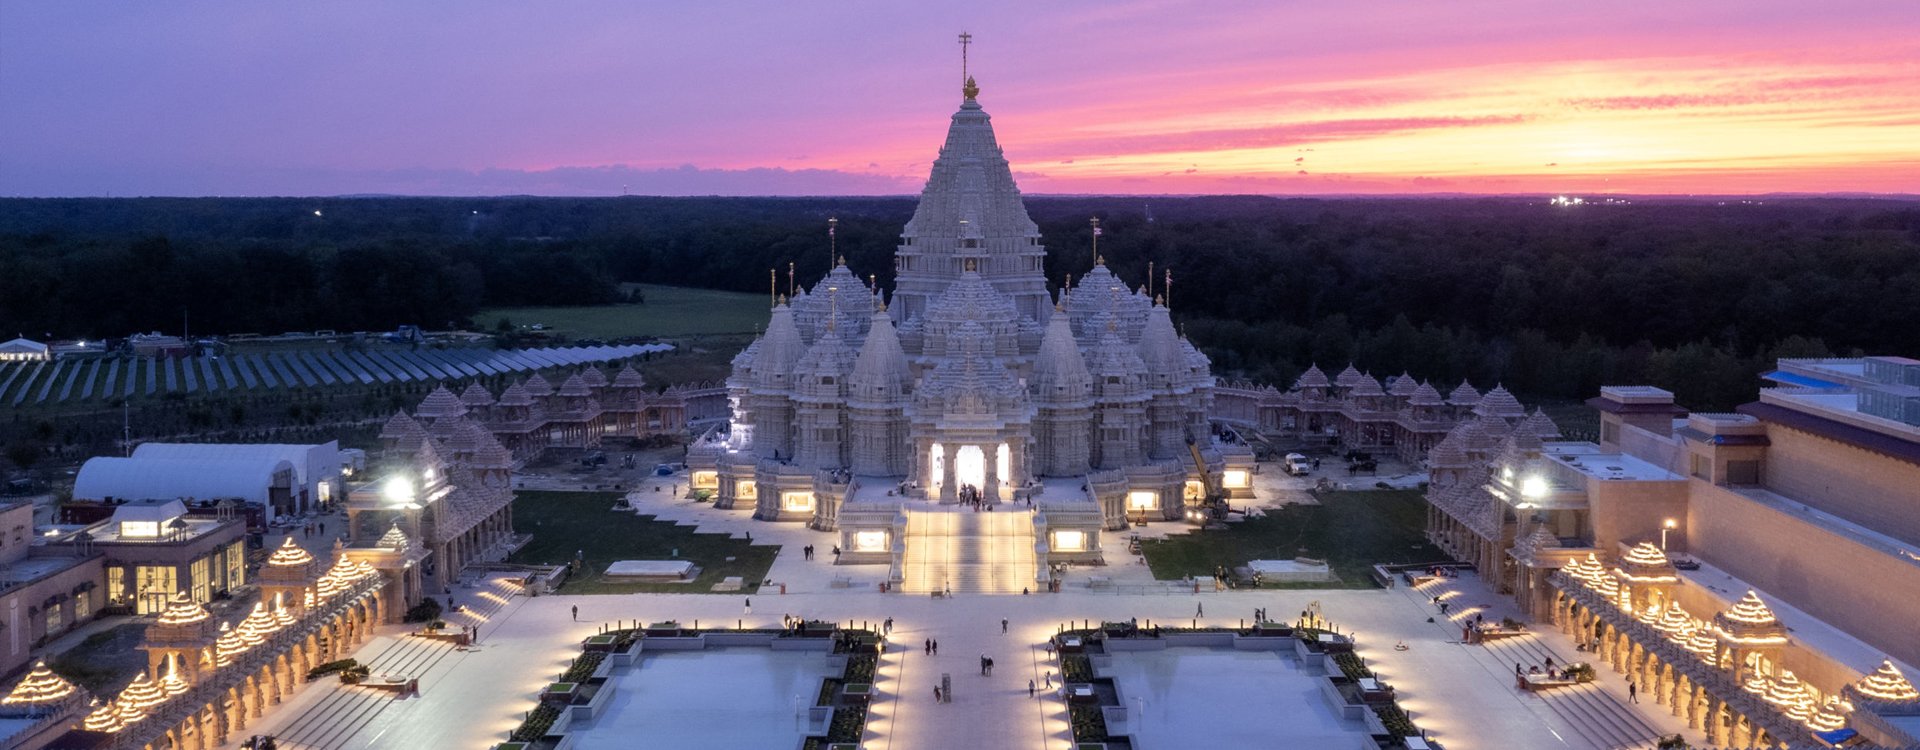 Экскурсия «Сад скульптур и самый большой индуистский храм мира» – 13 июля